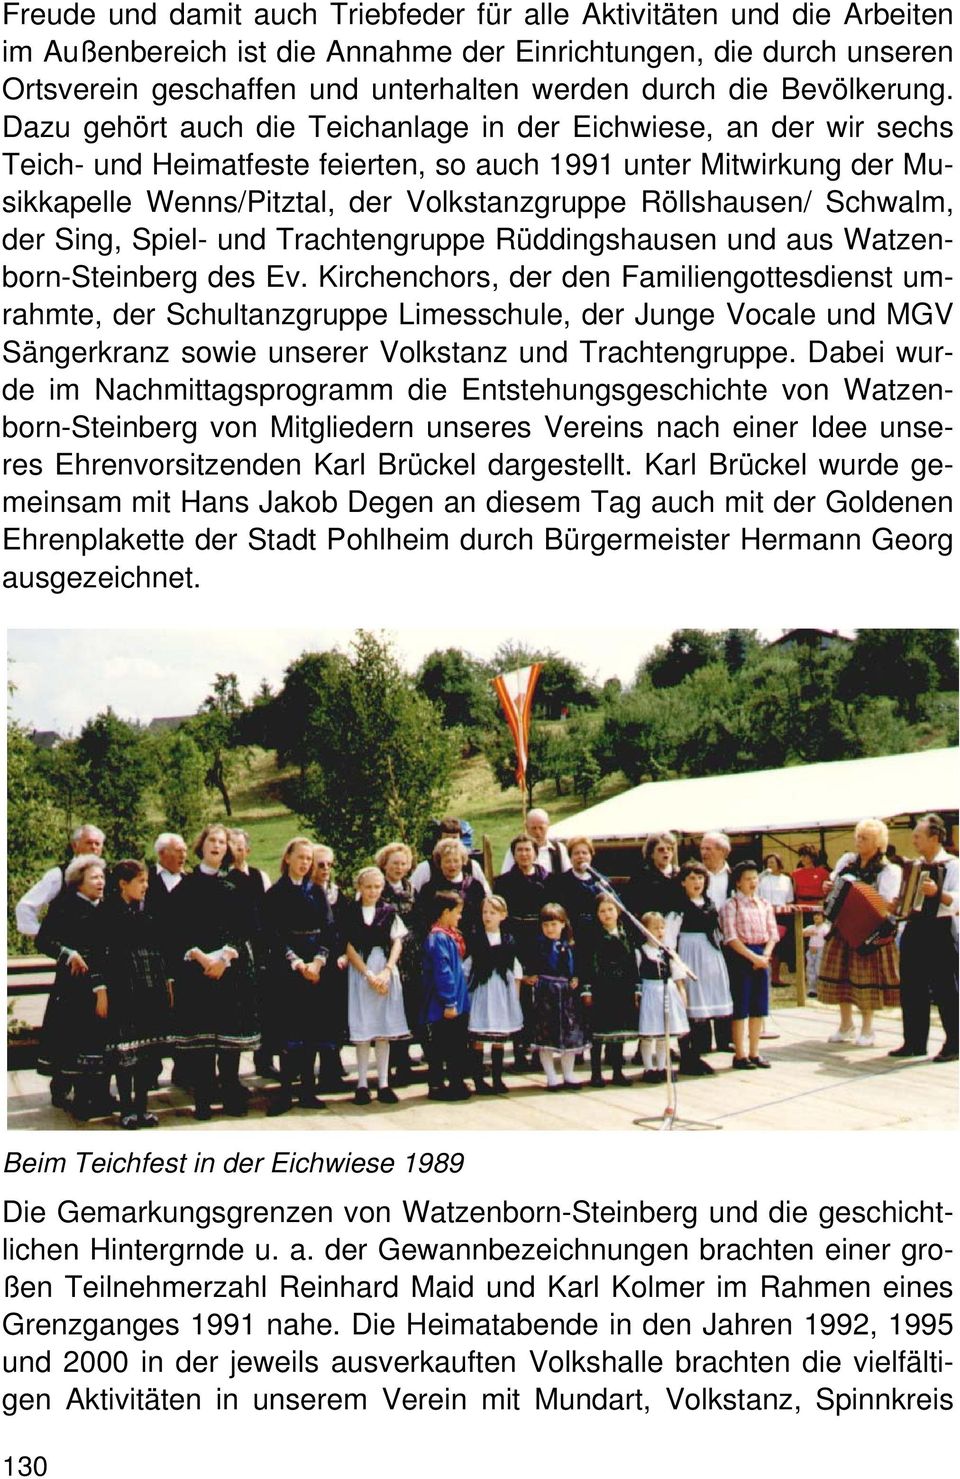 Dazu gehört auch die Teichanlage in der Eichwiese, an der wir sechs Teich- und Heimatfeste feierten, so auch 1991 unter Mitwirkung der Musikkapelle Wenns/Pitztal, der Volkstanzgruppe Röllshausen/